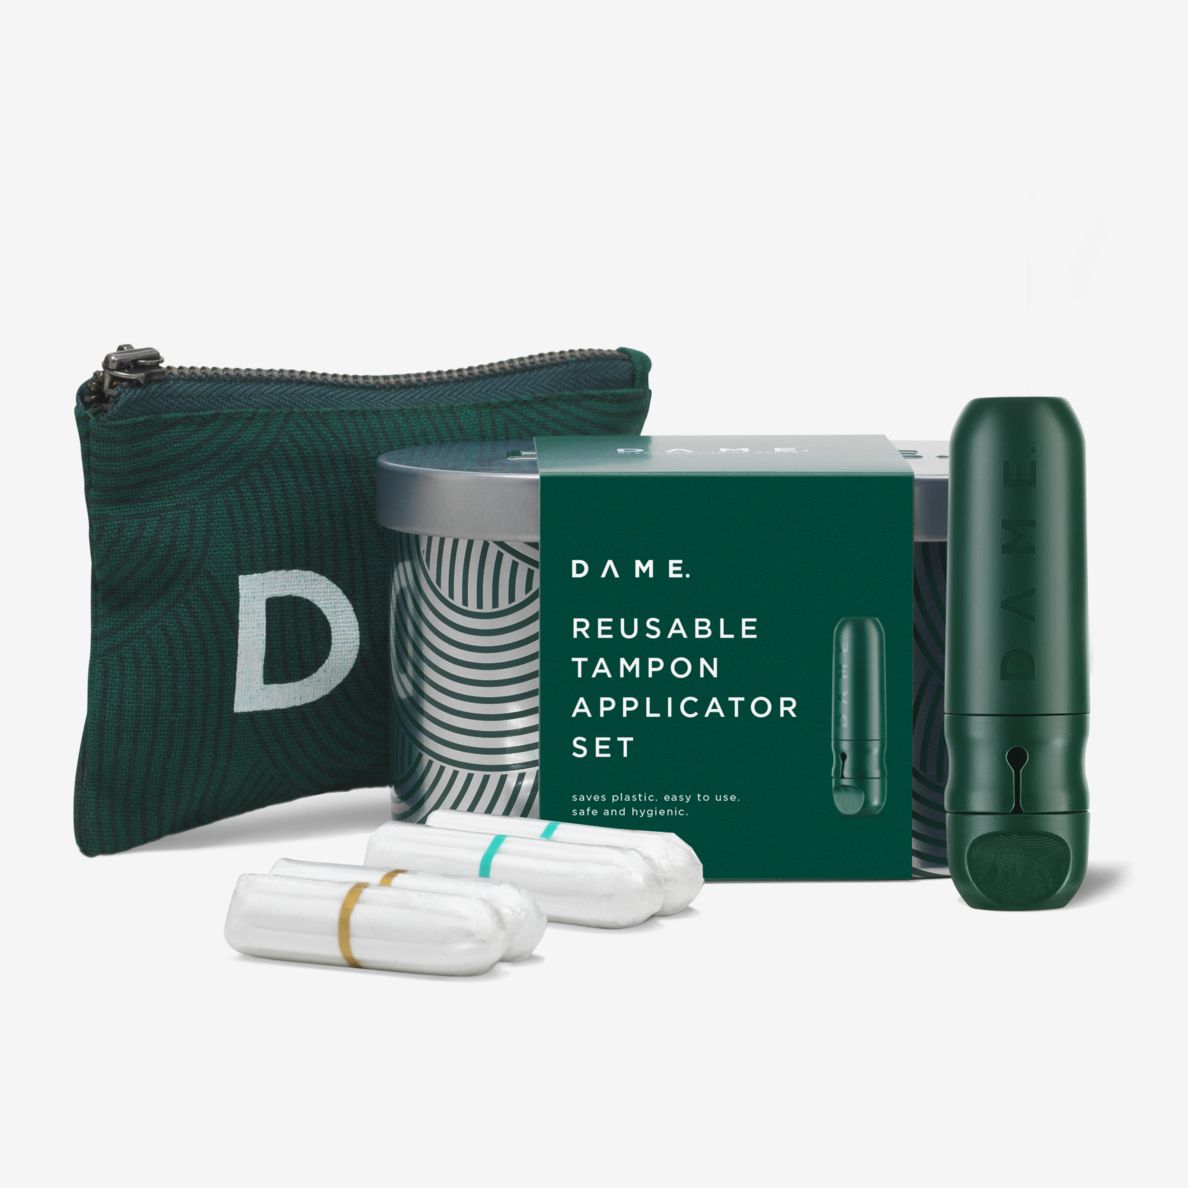 DAME. Reusable Tampon Applicator Review 2021